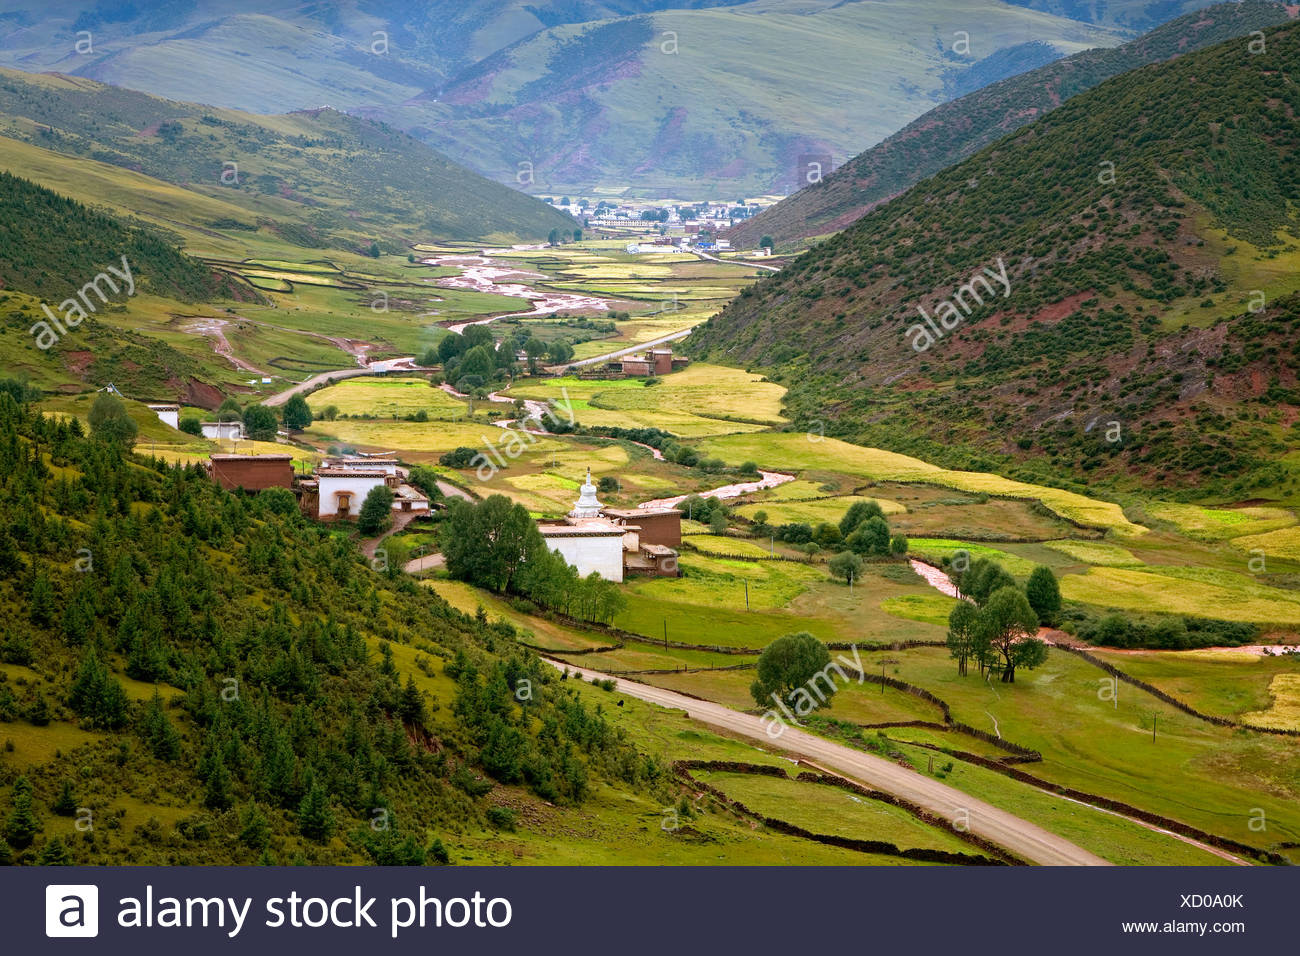 Nature scenics in Tibet,China Stock Photo - Alamy